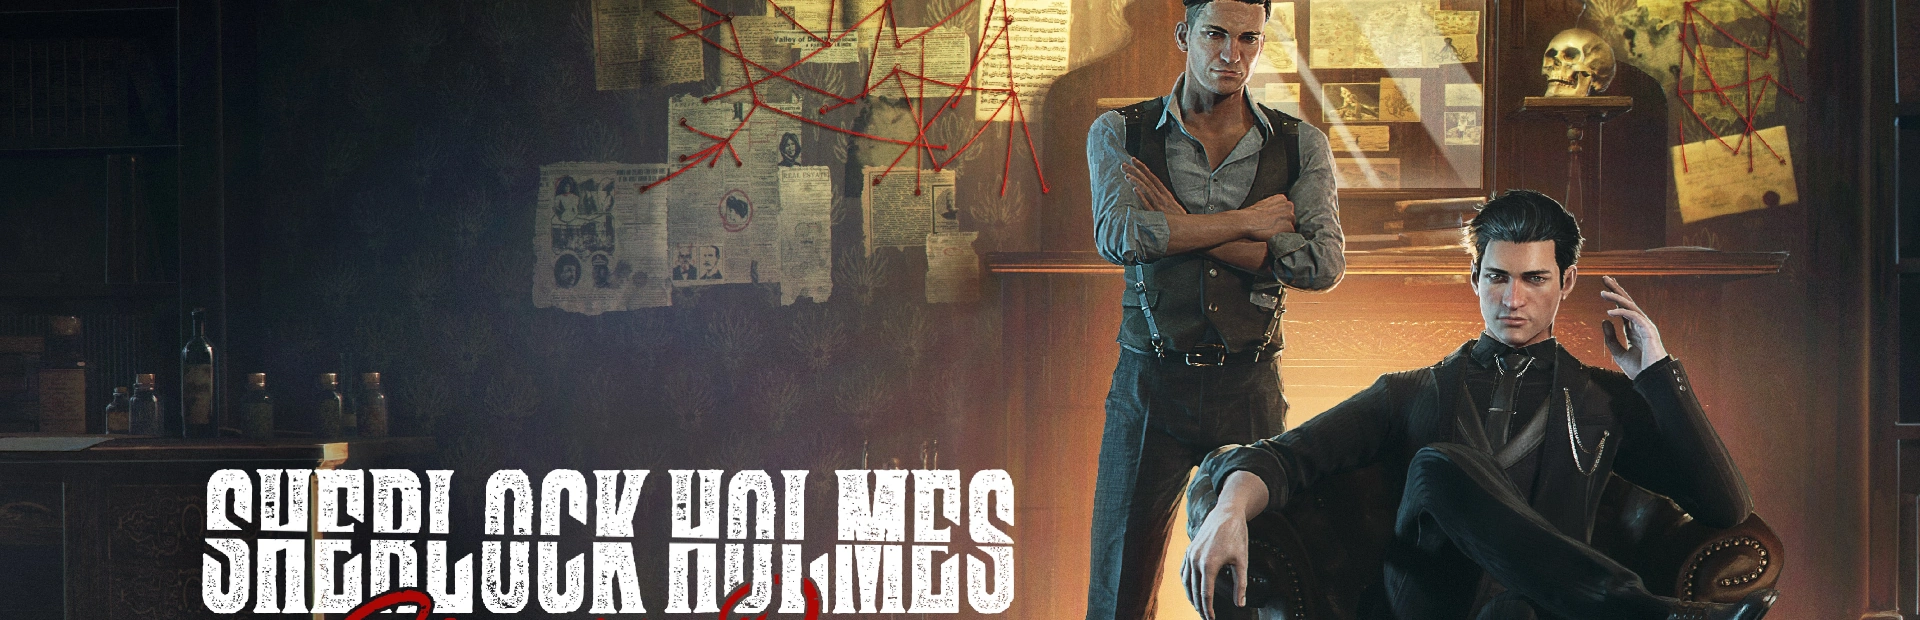 دانلود بازیSherlock Holmes Chapter One برای کامپیوتر|گیمباتو